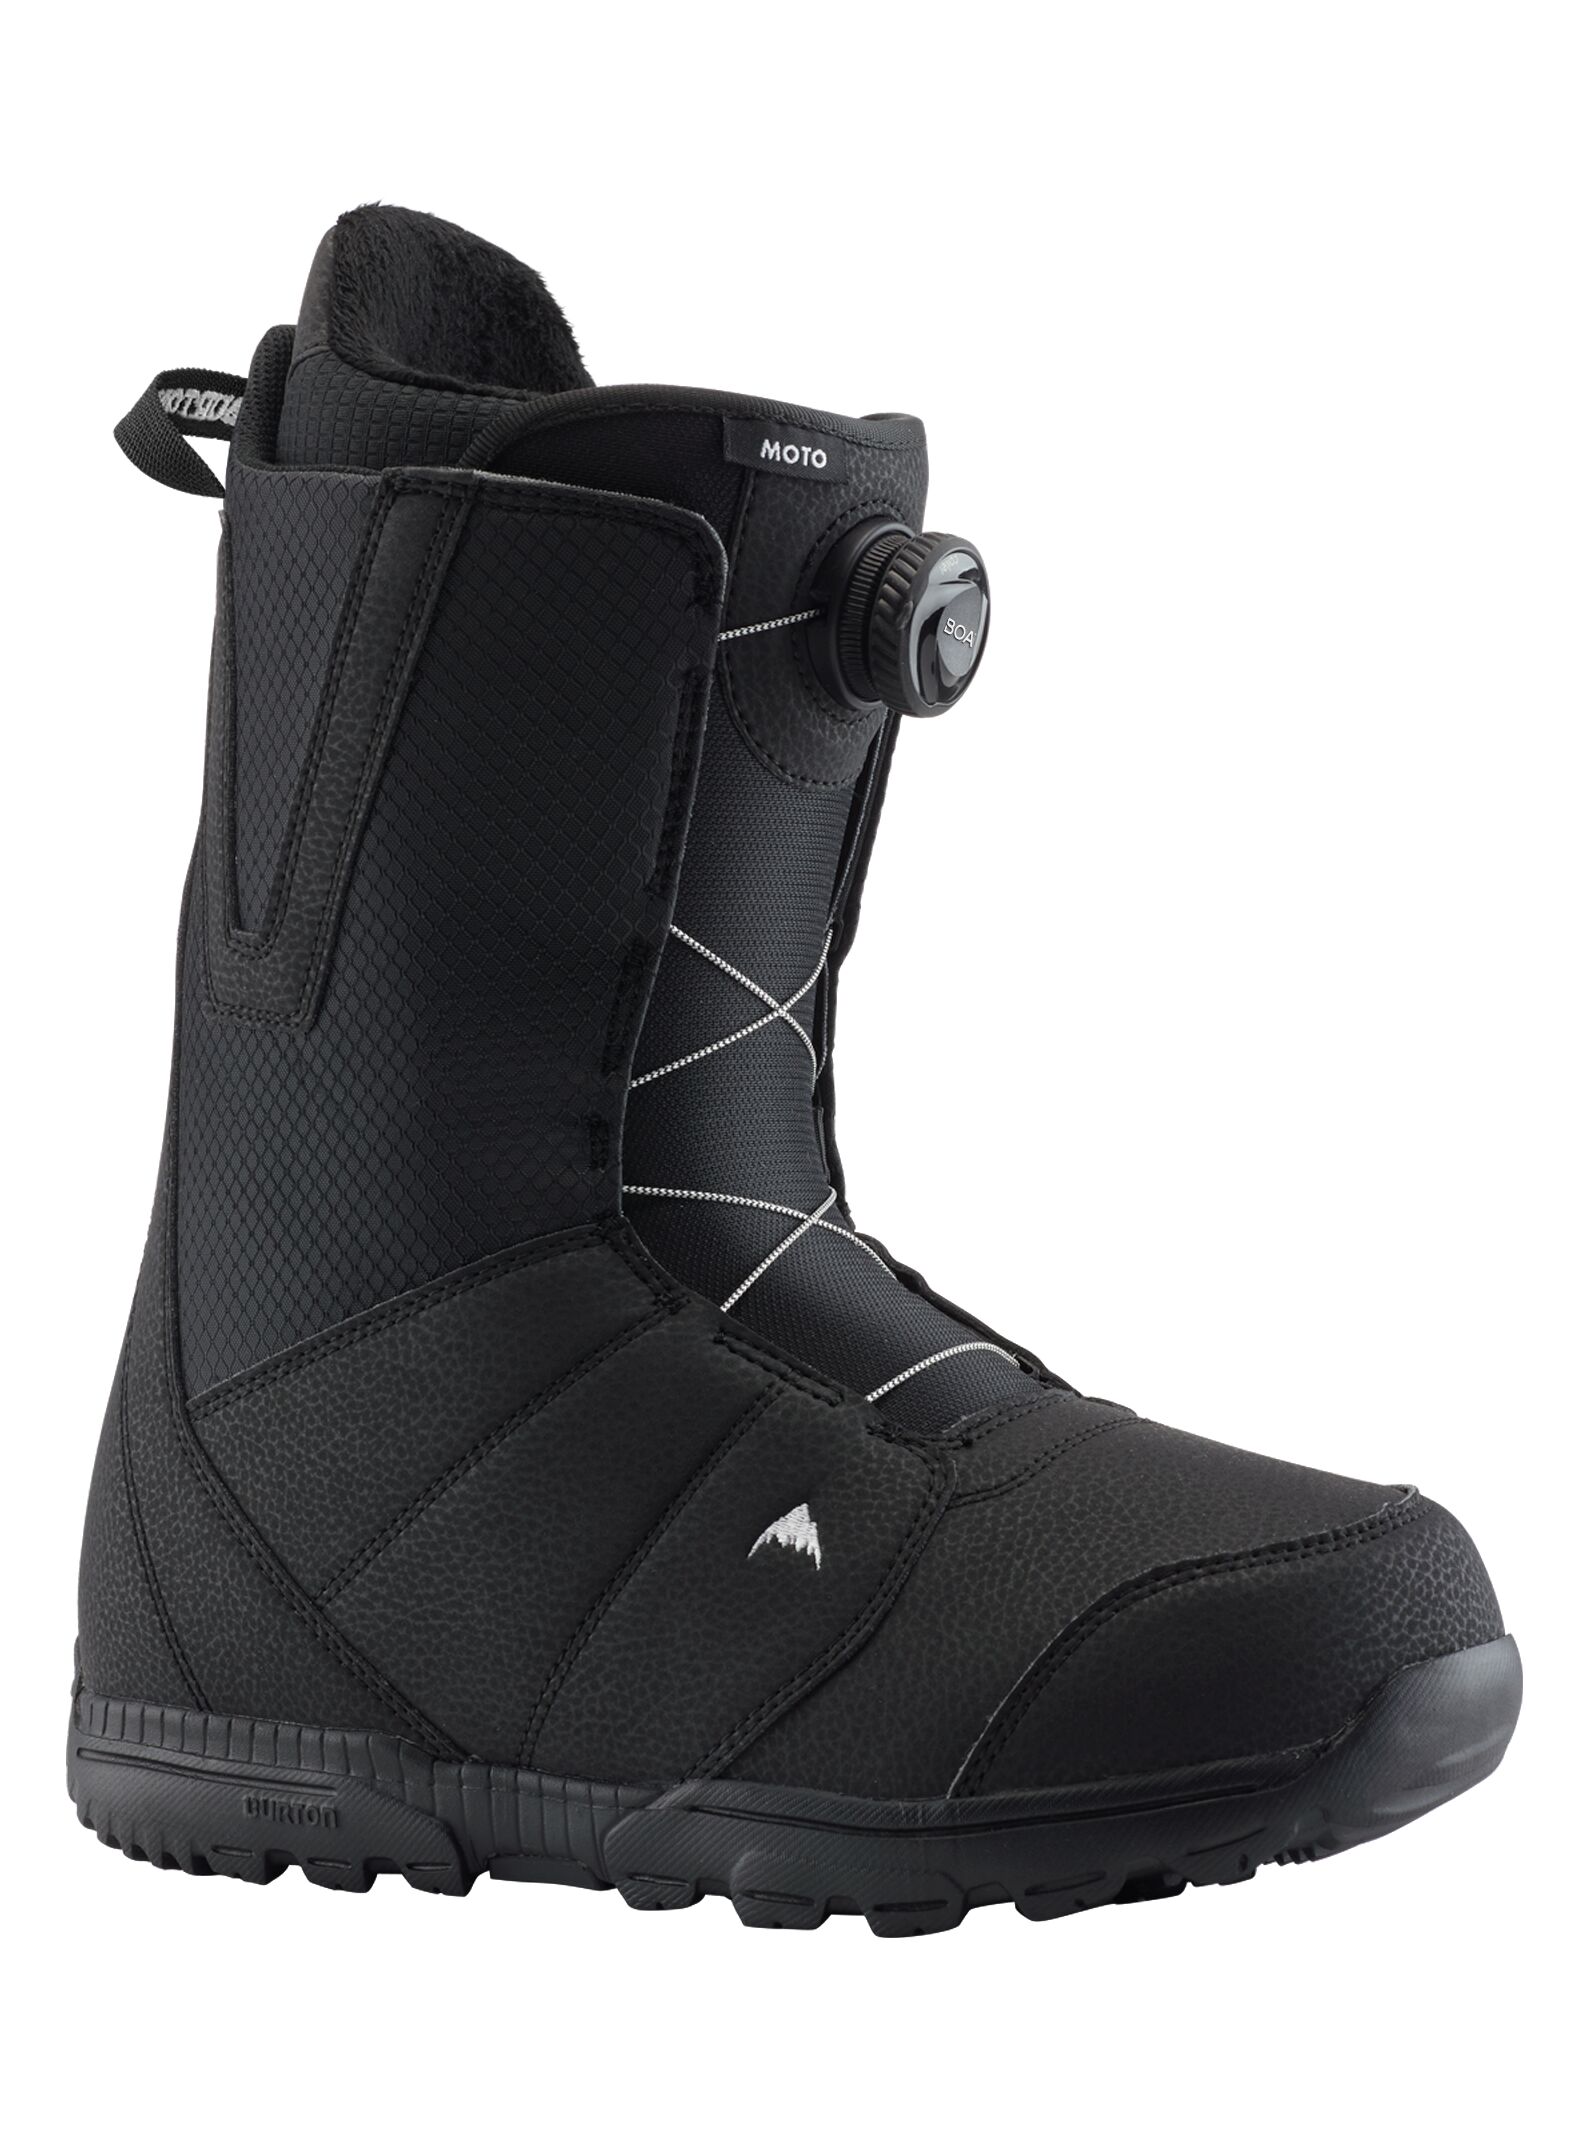 Burton Moto BOA Snowboard Boots black